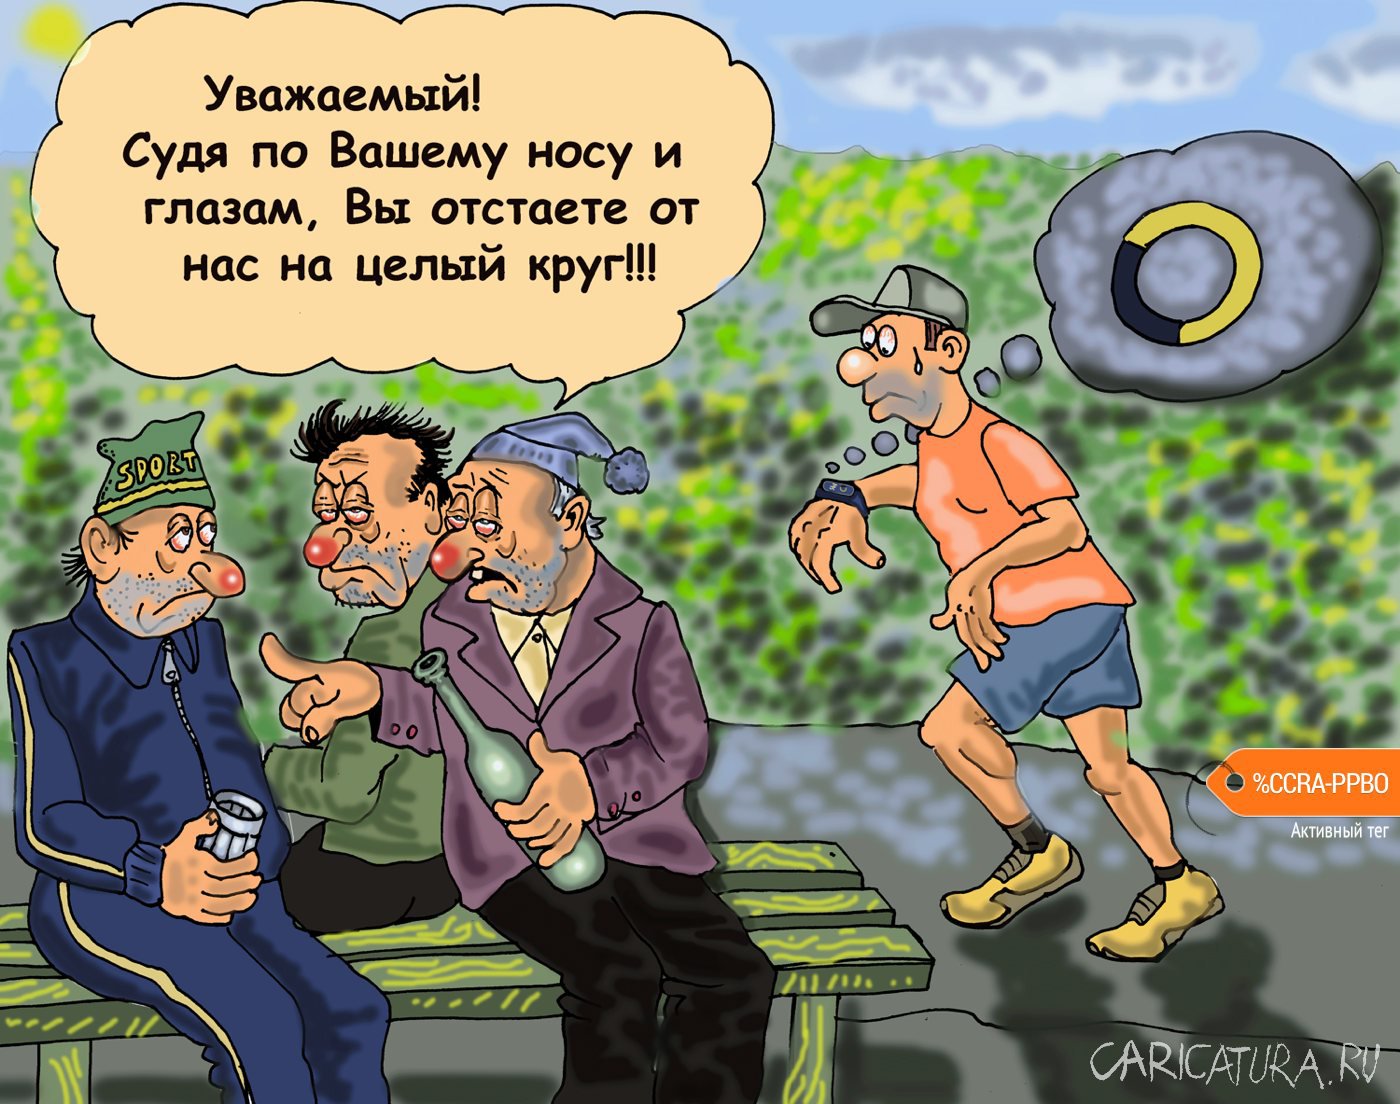 Карикатура "Алкоголик спортсмен", Булат Ирсаев